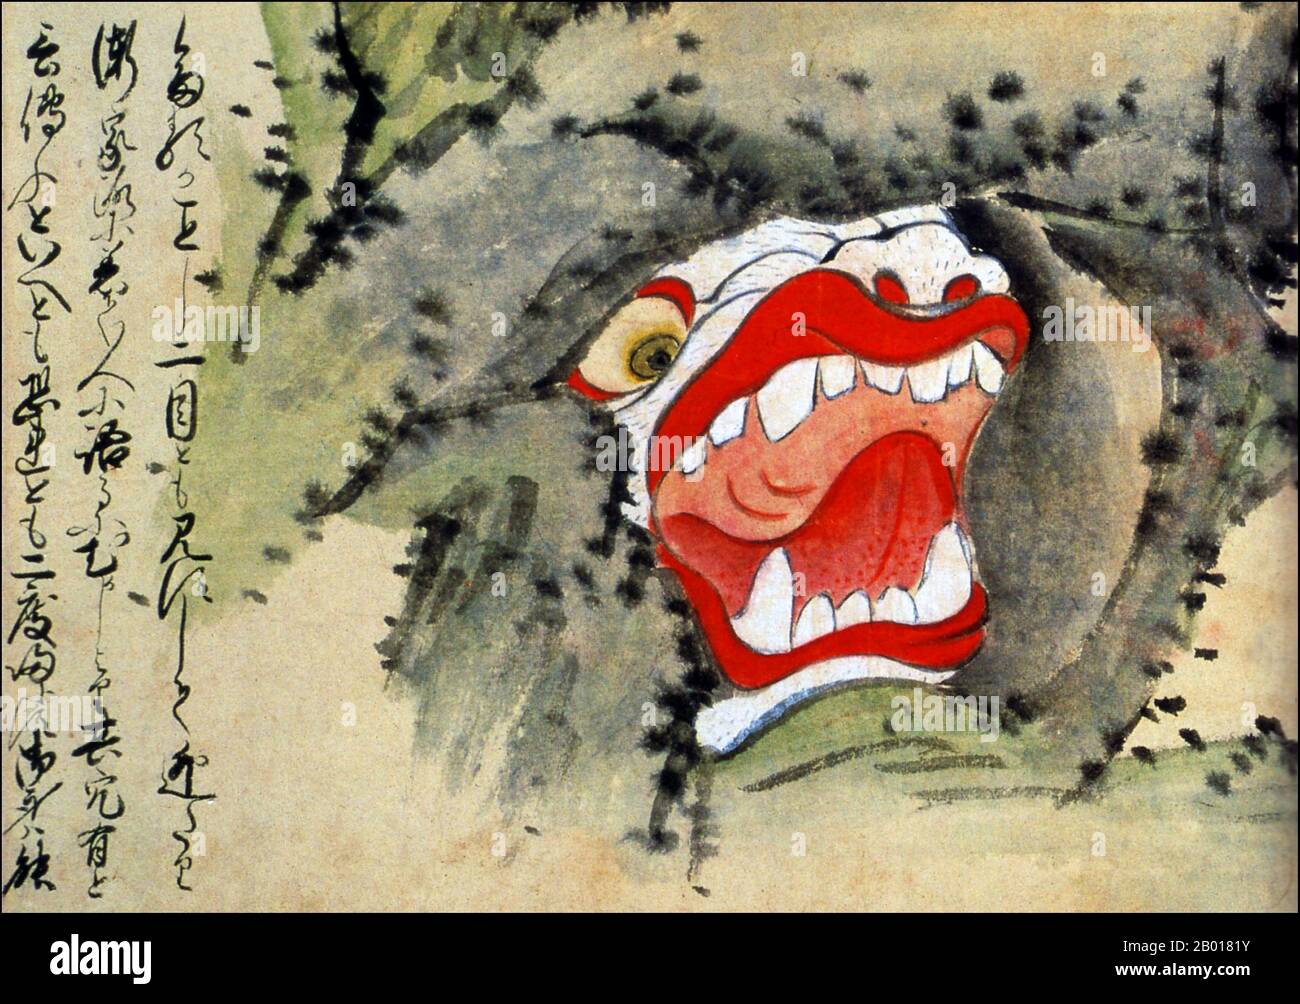 Giappone: Il 'foro del monster' della Prefettura di Kumamoto. Dal Kaikidan Ekotoba Monster Scroll, metà del 19th secolo. Questa illustrazione mostra una grotta mostruosa che si ritiene esista in profondità nelle montagne della prefettura di Kumamoto. A prima vista, sembra una grotta ordinaria. Ma mentre ti avvicini all'ingresso, gli occhi e i denti diventano visibili. Il Kaikidan Ekotoba è un manscroll della metà del 19th secolo che traccia 33 mostri leggendari e stranezze umane, principalmente provenienti dalla regione di Kyushu in Giappone, ma con molti di altri paesi, tra cui Cina, Russia e Corea. Foto Stock